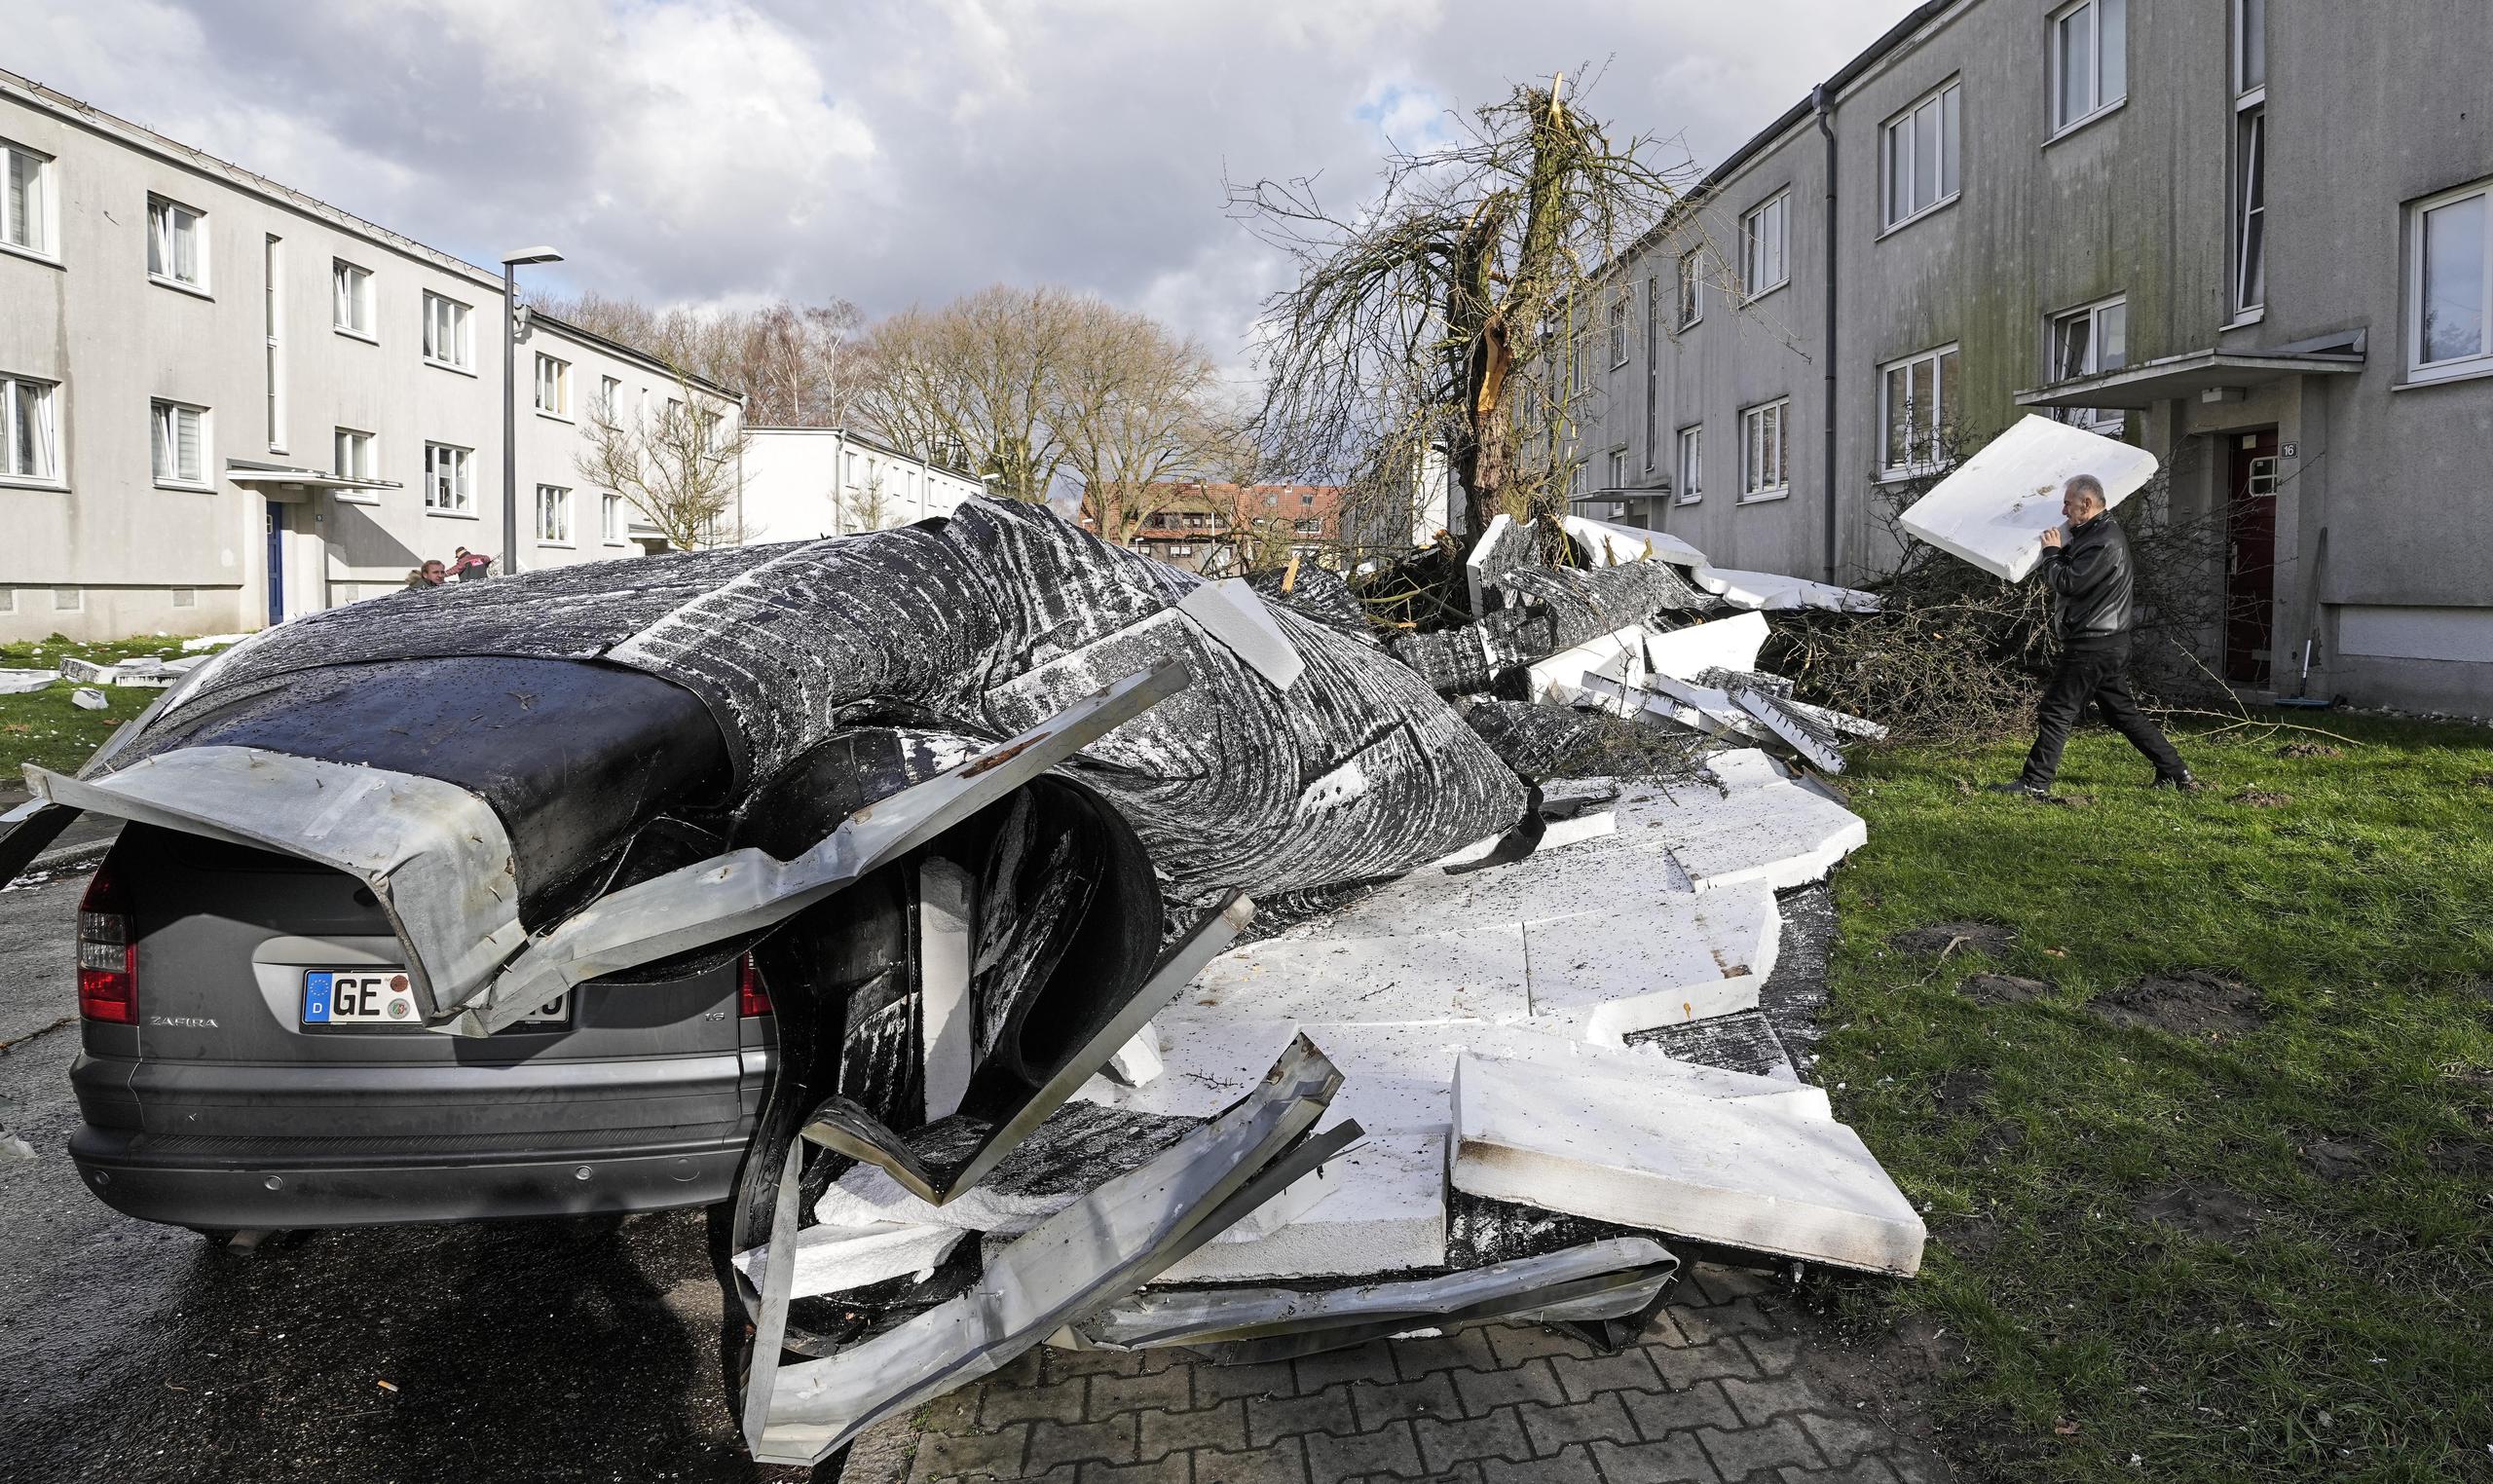 En Alemania, un conductor de 37 años murió después de que un árbol cayó sobre su automóvil cerca de Bad Bevensen, al sur de Hamburgo, informaron los bomberos.